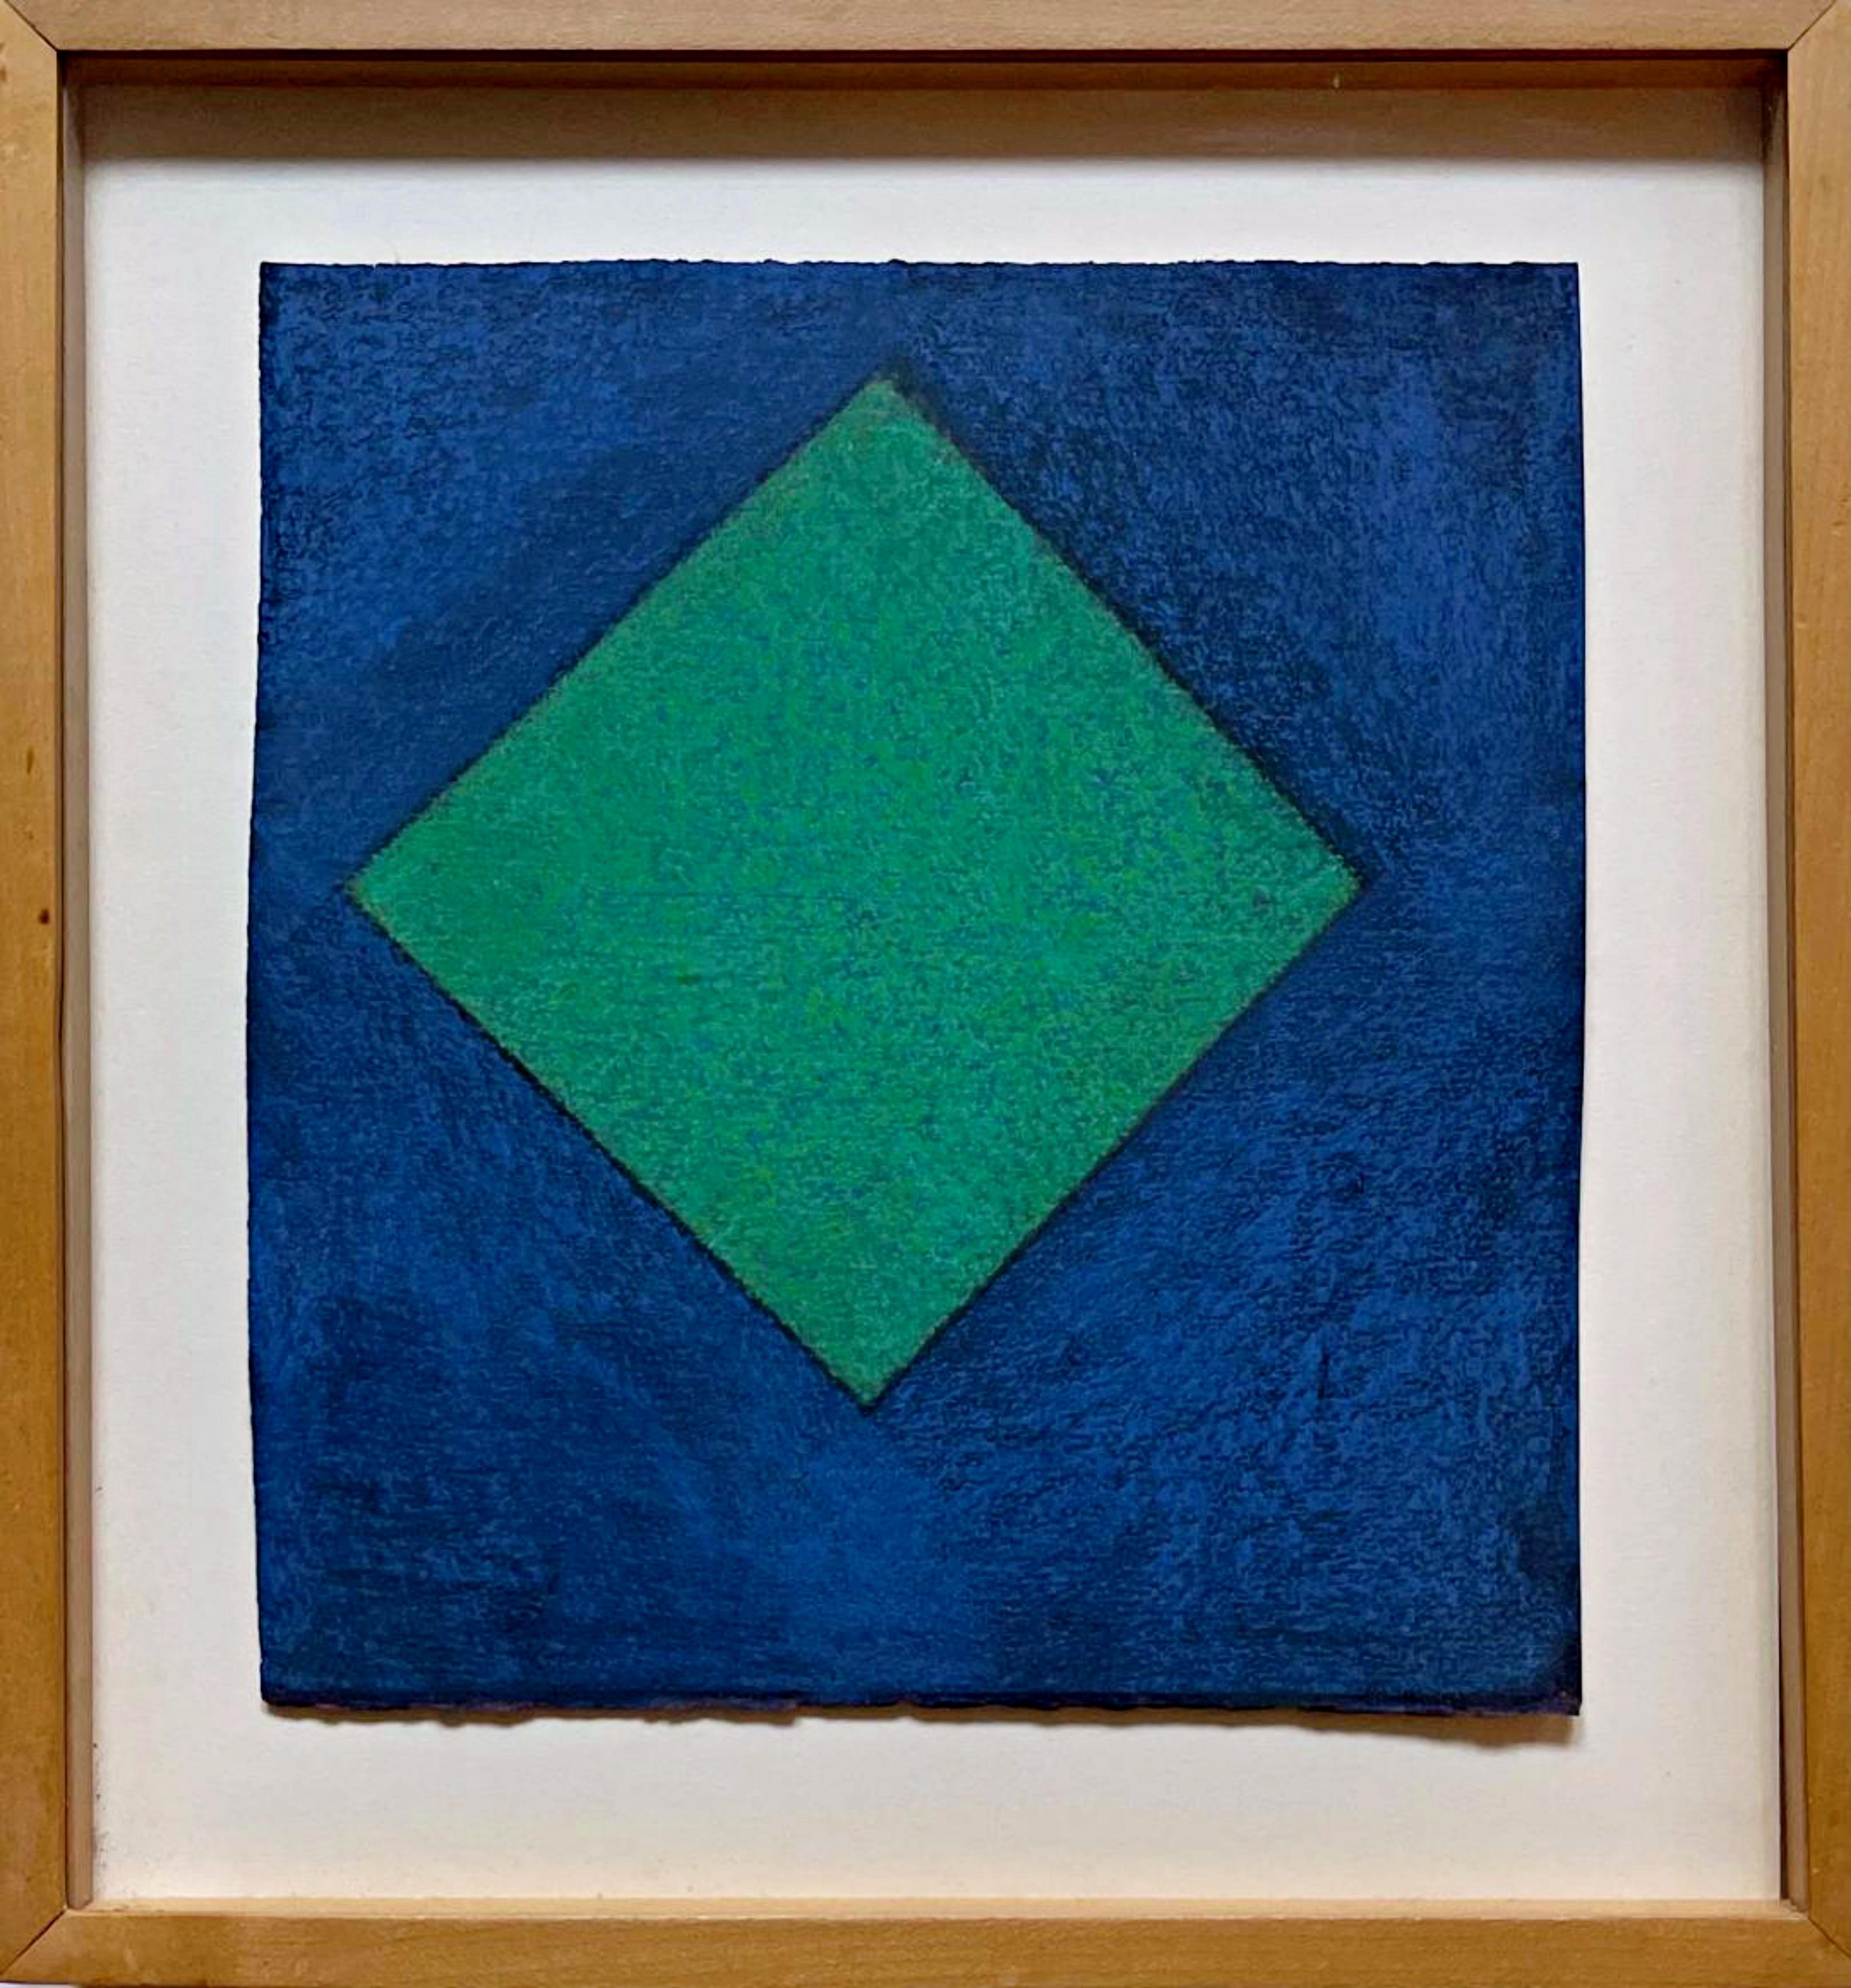 Ein exquisites Werk der geometrischen Abstraktion dieses berühmten Künstlers
Winston Roeth
Ohne Titel, ca. 1996
Pastell auf handgeschöpftem Papier
Handsigniert auf der Vorderseite
Inklusive Rahmen: Schwebend und gerahmt in der ursprünglichen